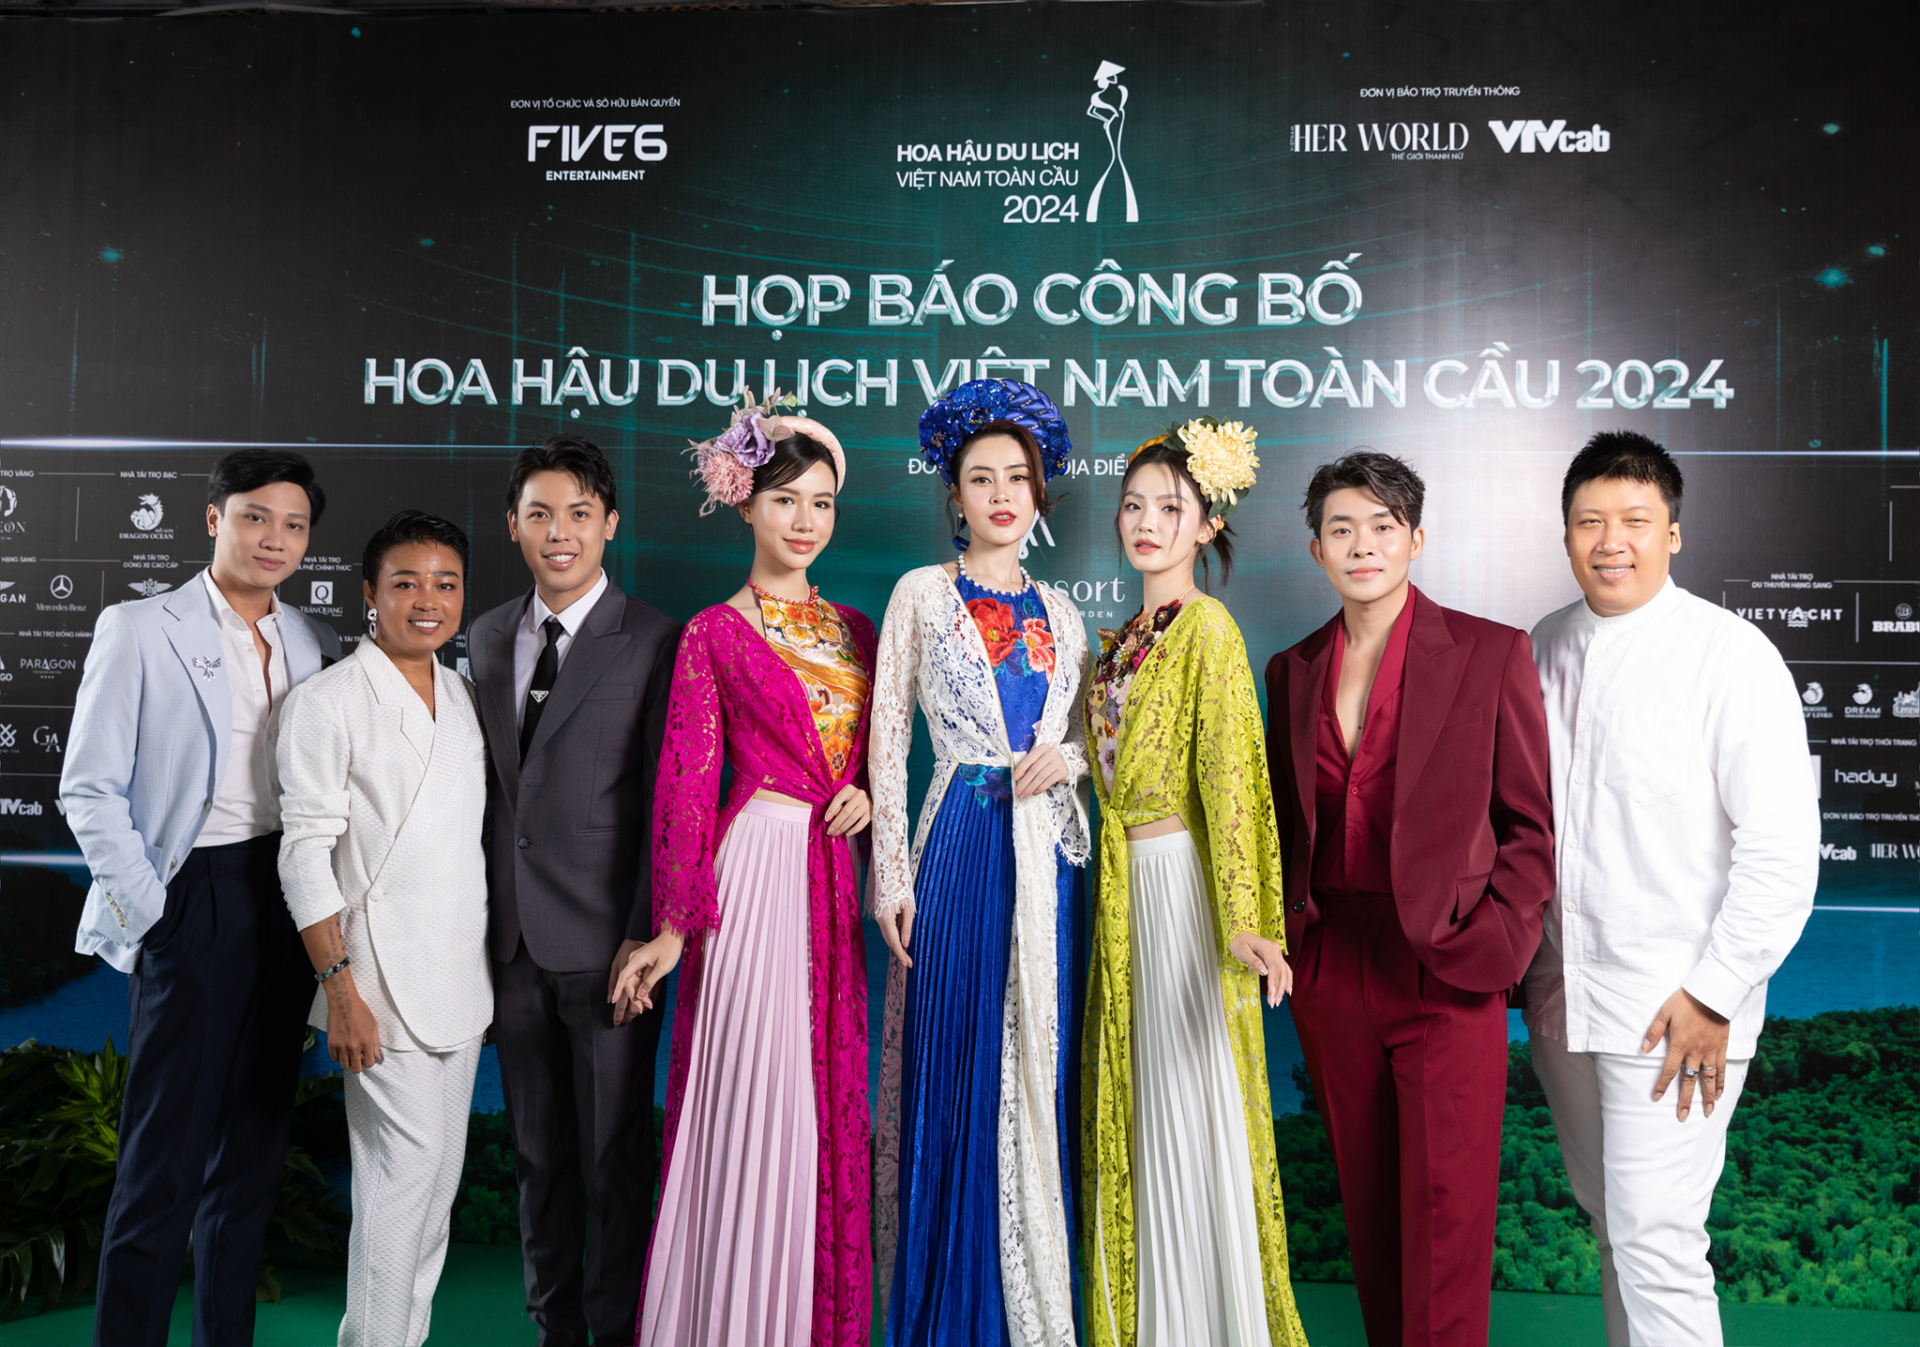 Hoa hậu du lịch Việt Nam toàn cầu 2024 sẽ nhận được giải thưởng 3,5 tỉ đồng - ảnh 1